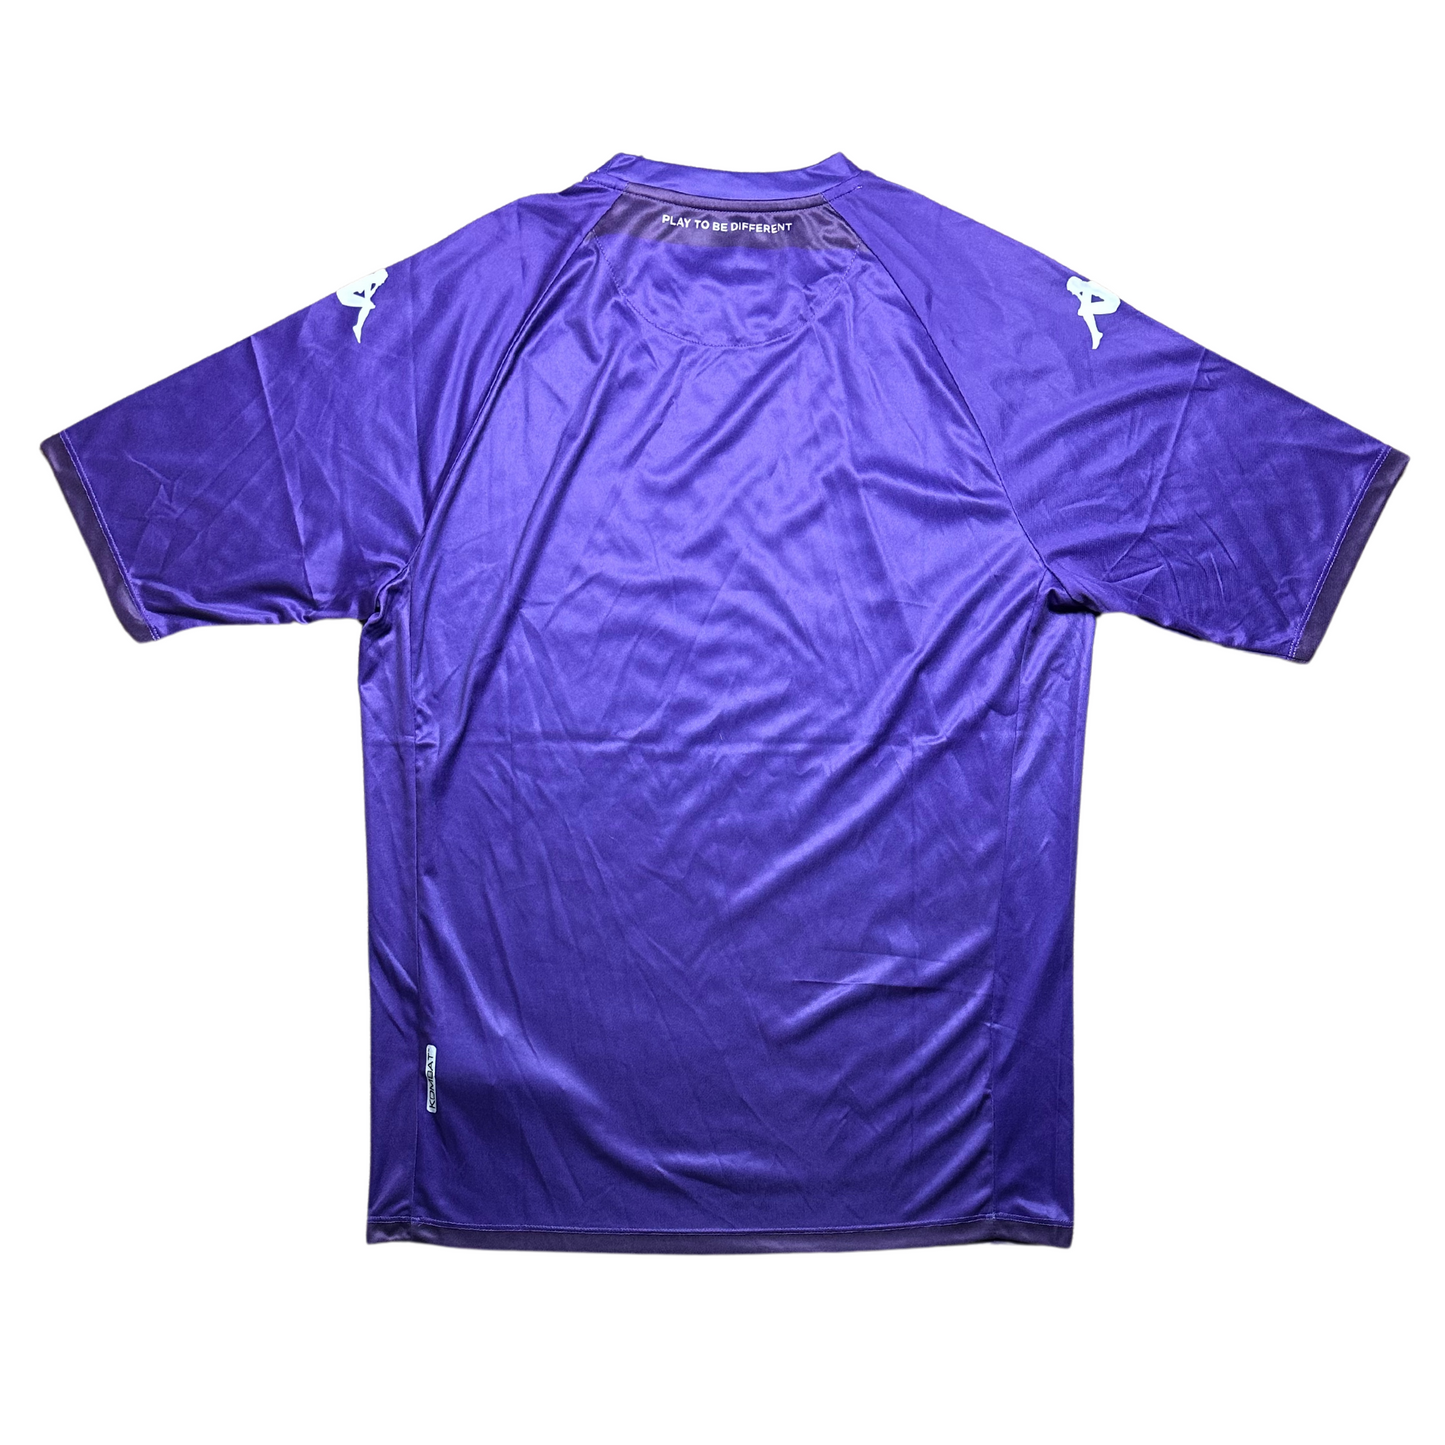 Fiorentina 2022/2023 Home Football Shirt